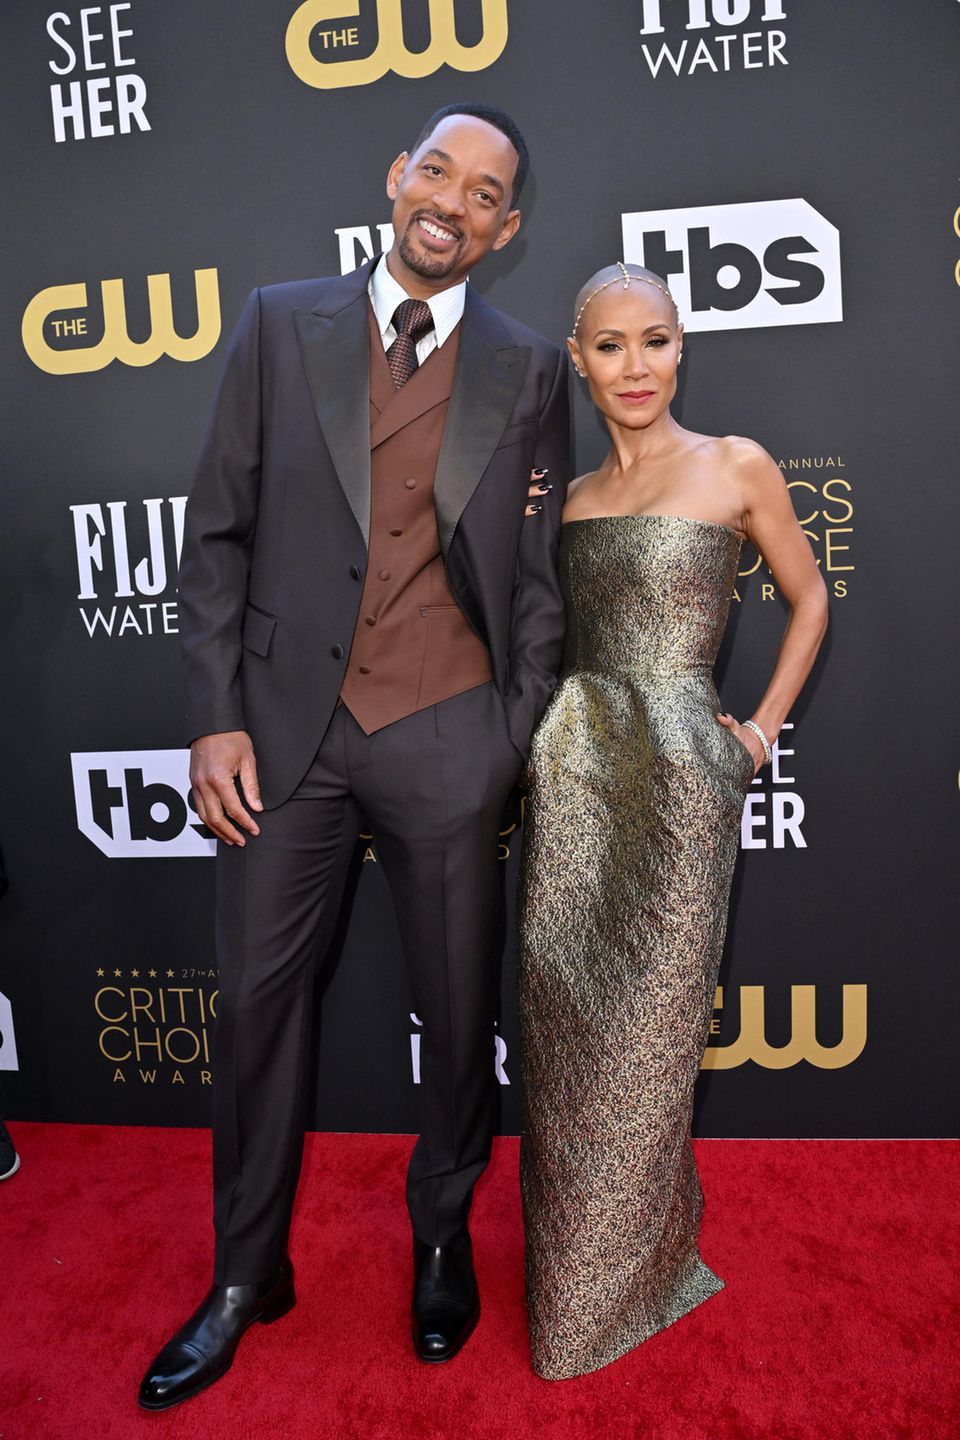 Gemeinsam posieren Will Smith und seine Frau Jada Pinkett Smith auf dem Red Carpet. Will setzt auf eine Kombi aus Schwarz und Braun; Jada dagegen auf ein gold-graues Kleid ohne Träger. Dazu trägt sie goldenen Kopfschmuck.